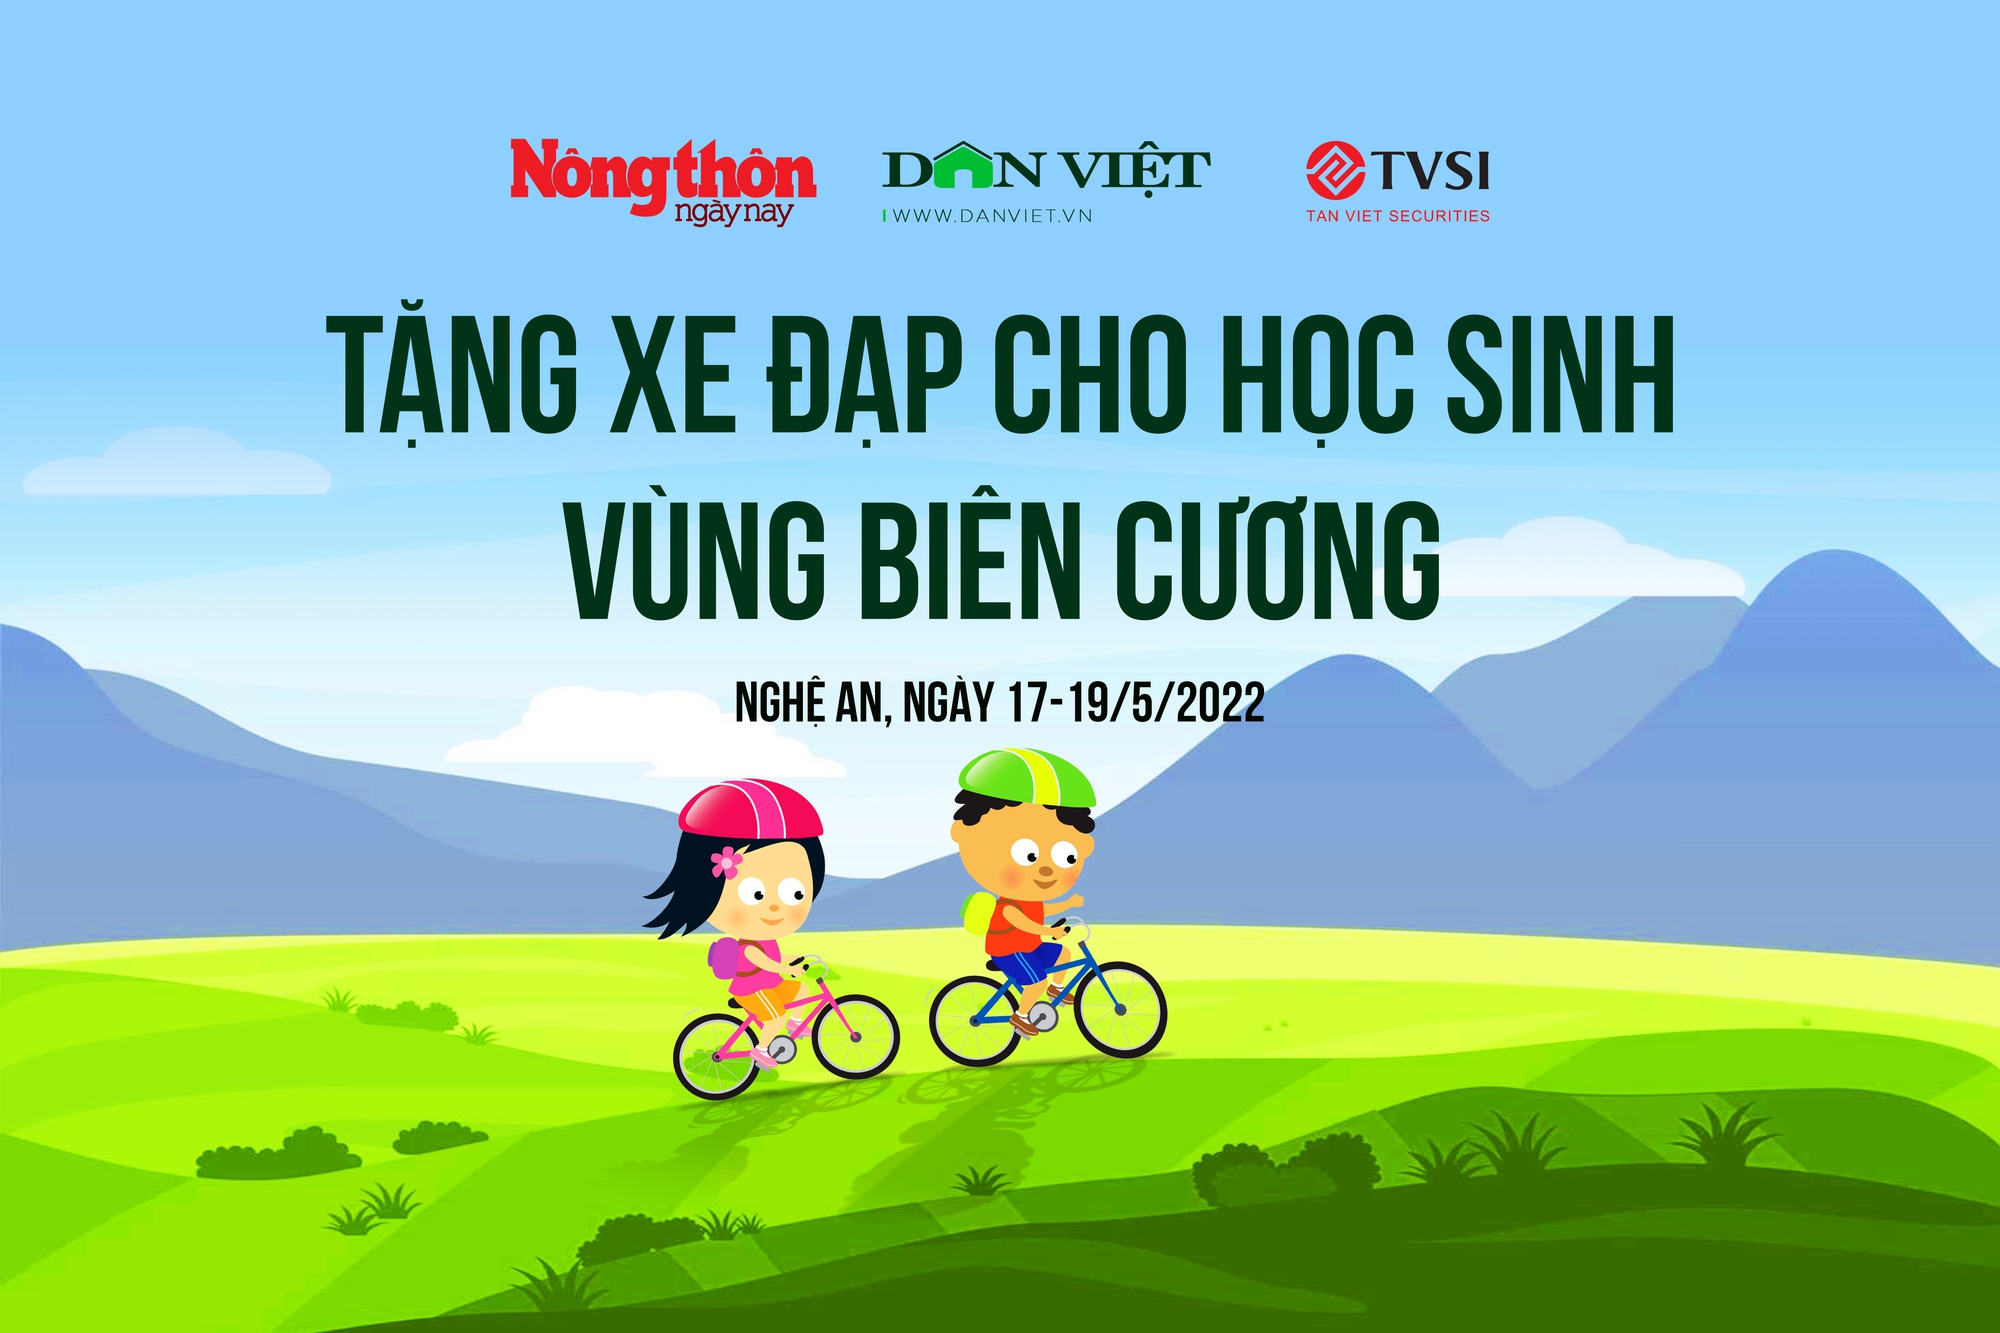 Sắp tổ chức chương trình tặng 100 xe đạp cho học sinh Bắc Lý 1 (Nghệ An) - Ảnh 1.